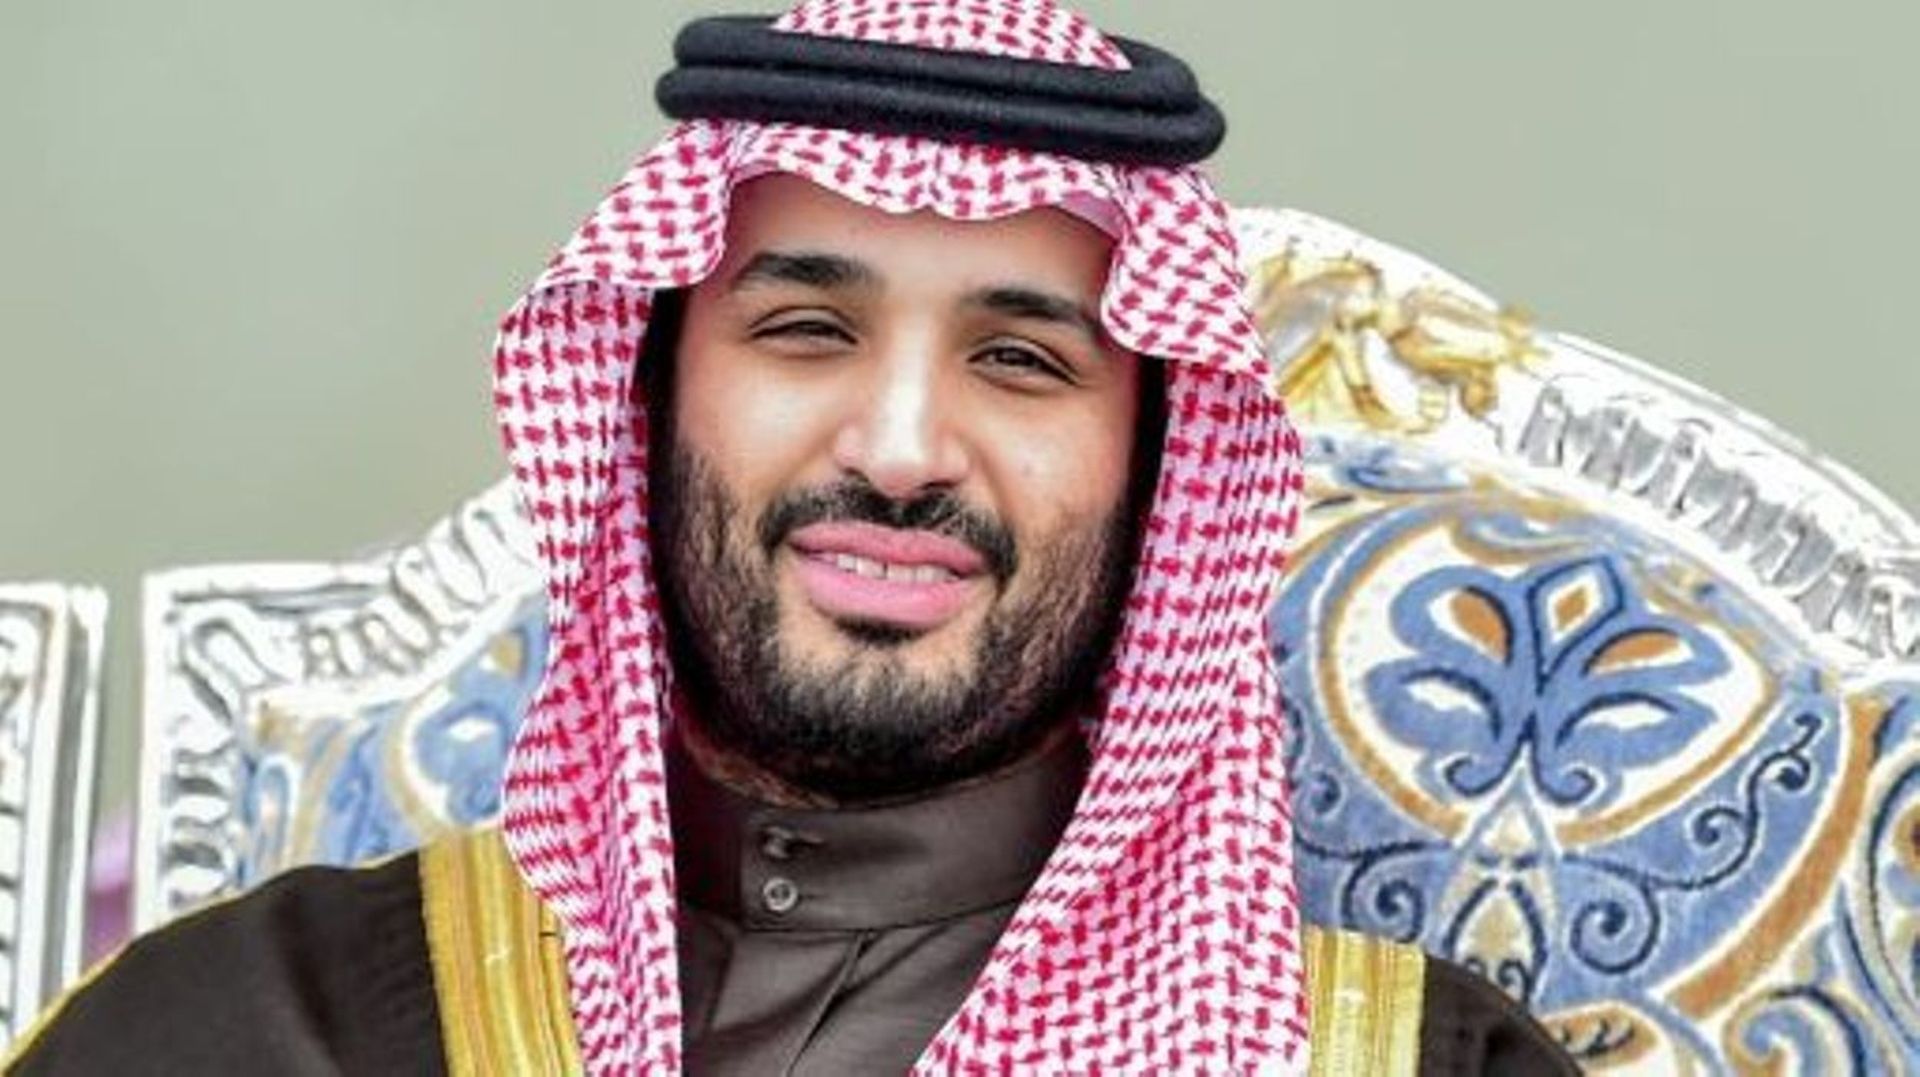 Le prince héritier saoudien Mohammed ben Salmane a officiellement lancé dimanche à Ryad une coalition militaire antiterroriste de 41 pays musulmans